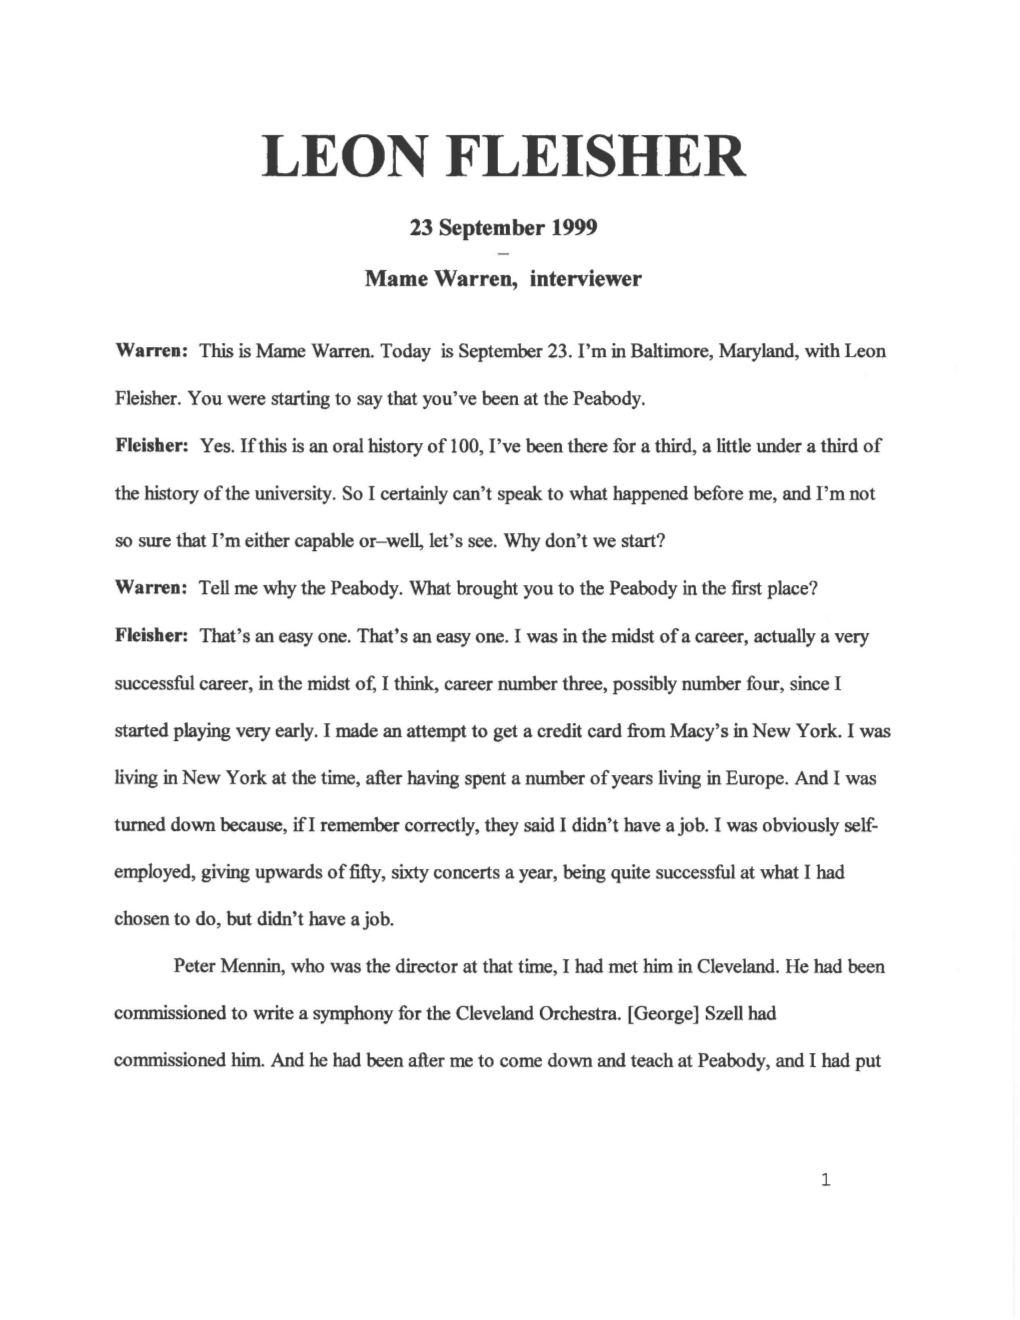 Leon Fleisher